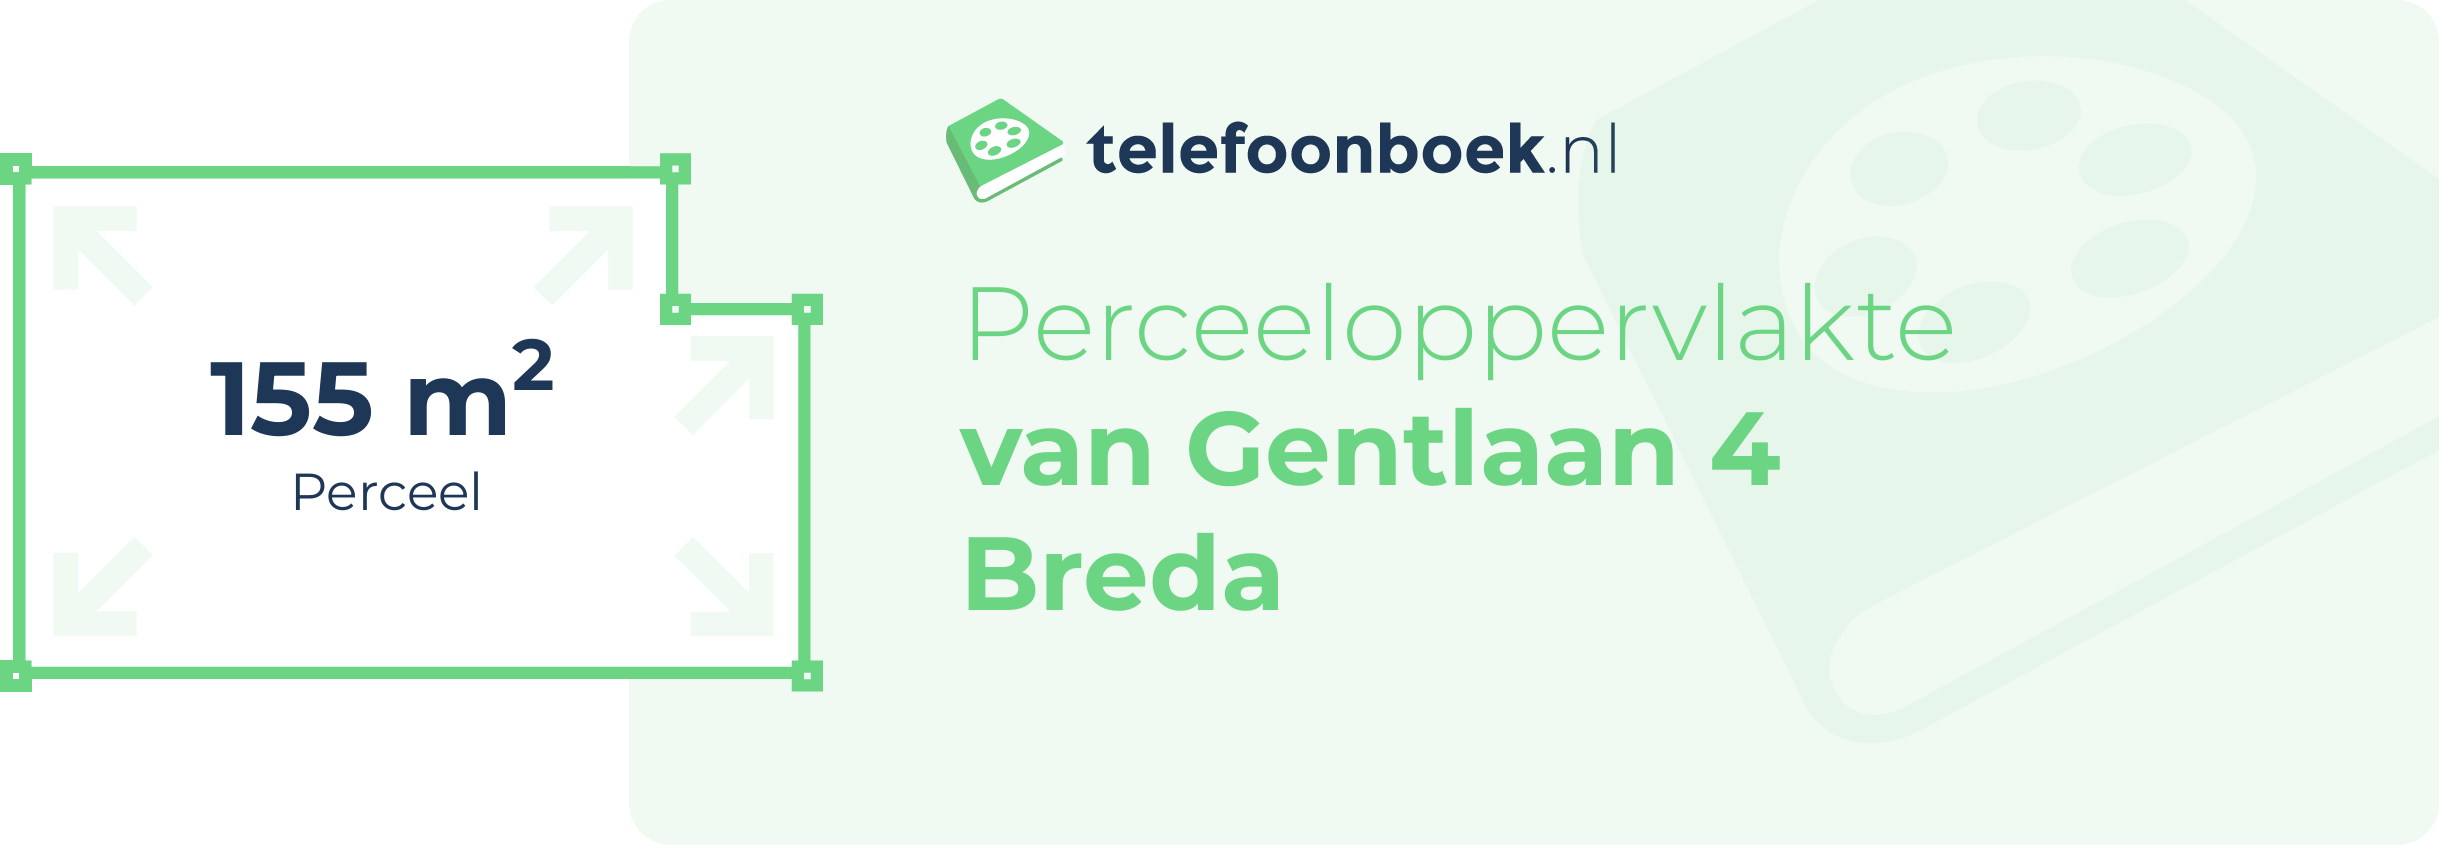 Perceeloppervlakte Van Gentlaan 4 Breda